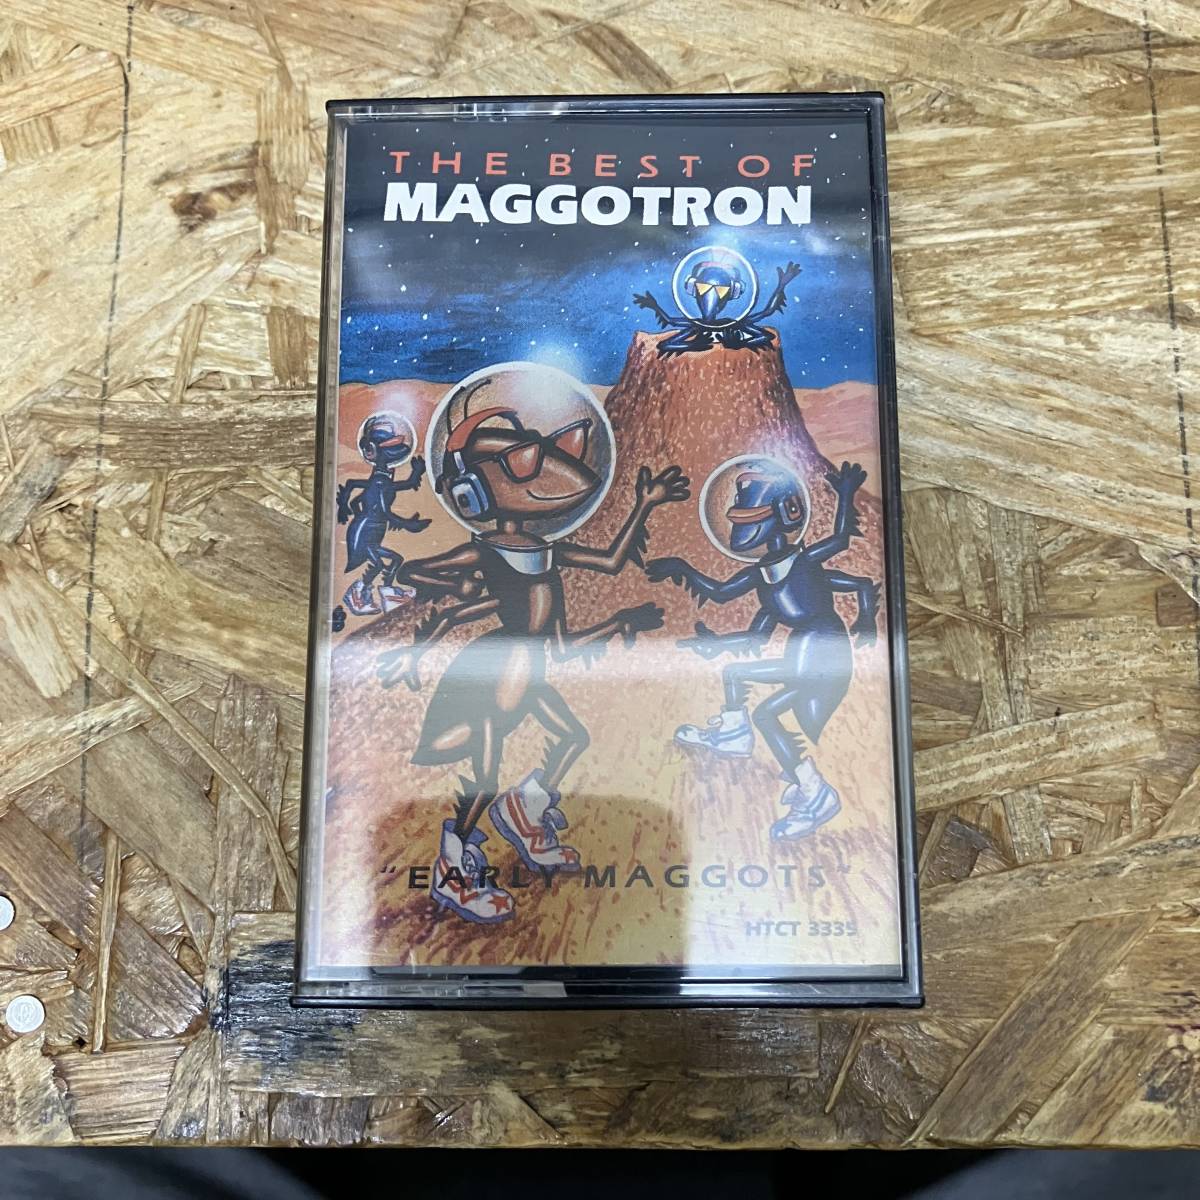 シPOPS,ROCK HE BEST OF MAGGOTRON - EARLY MAGGOTS アルバム,名作 TAPE 中古品の画像1